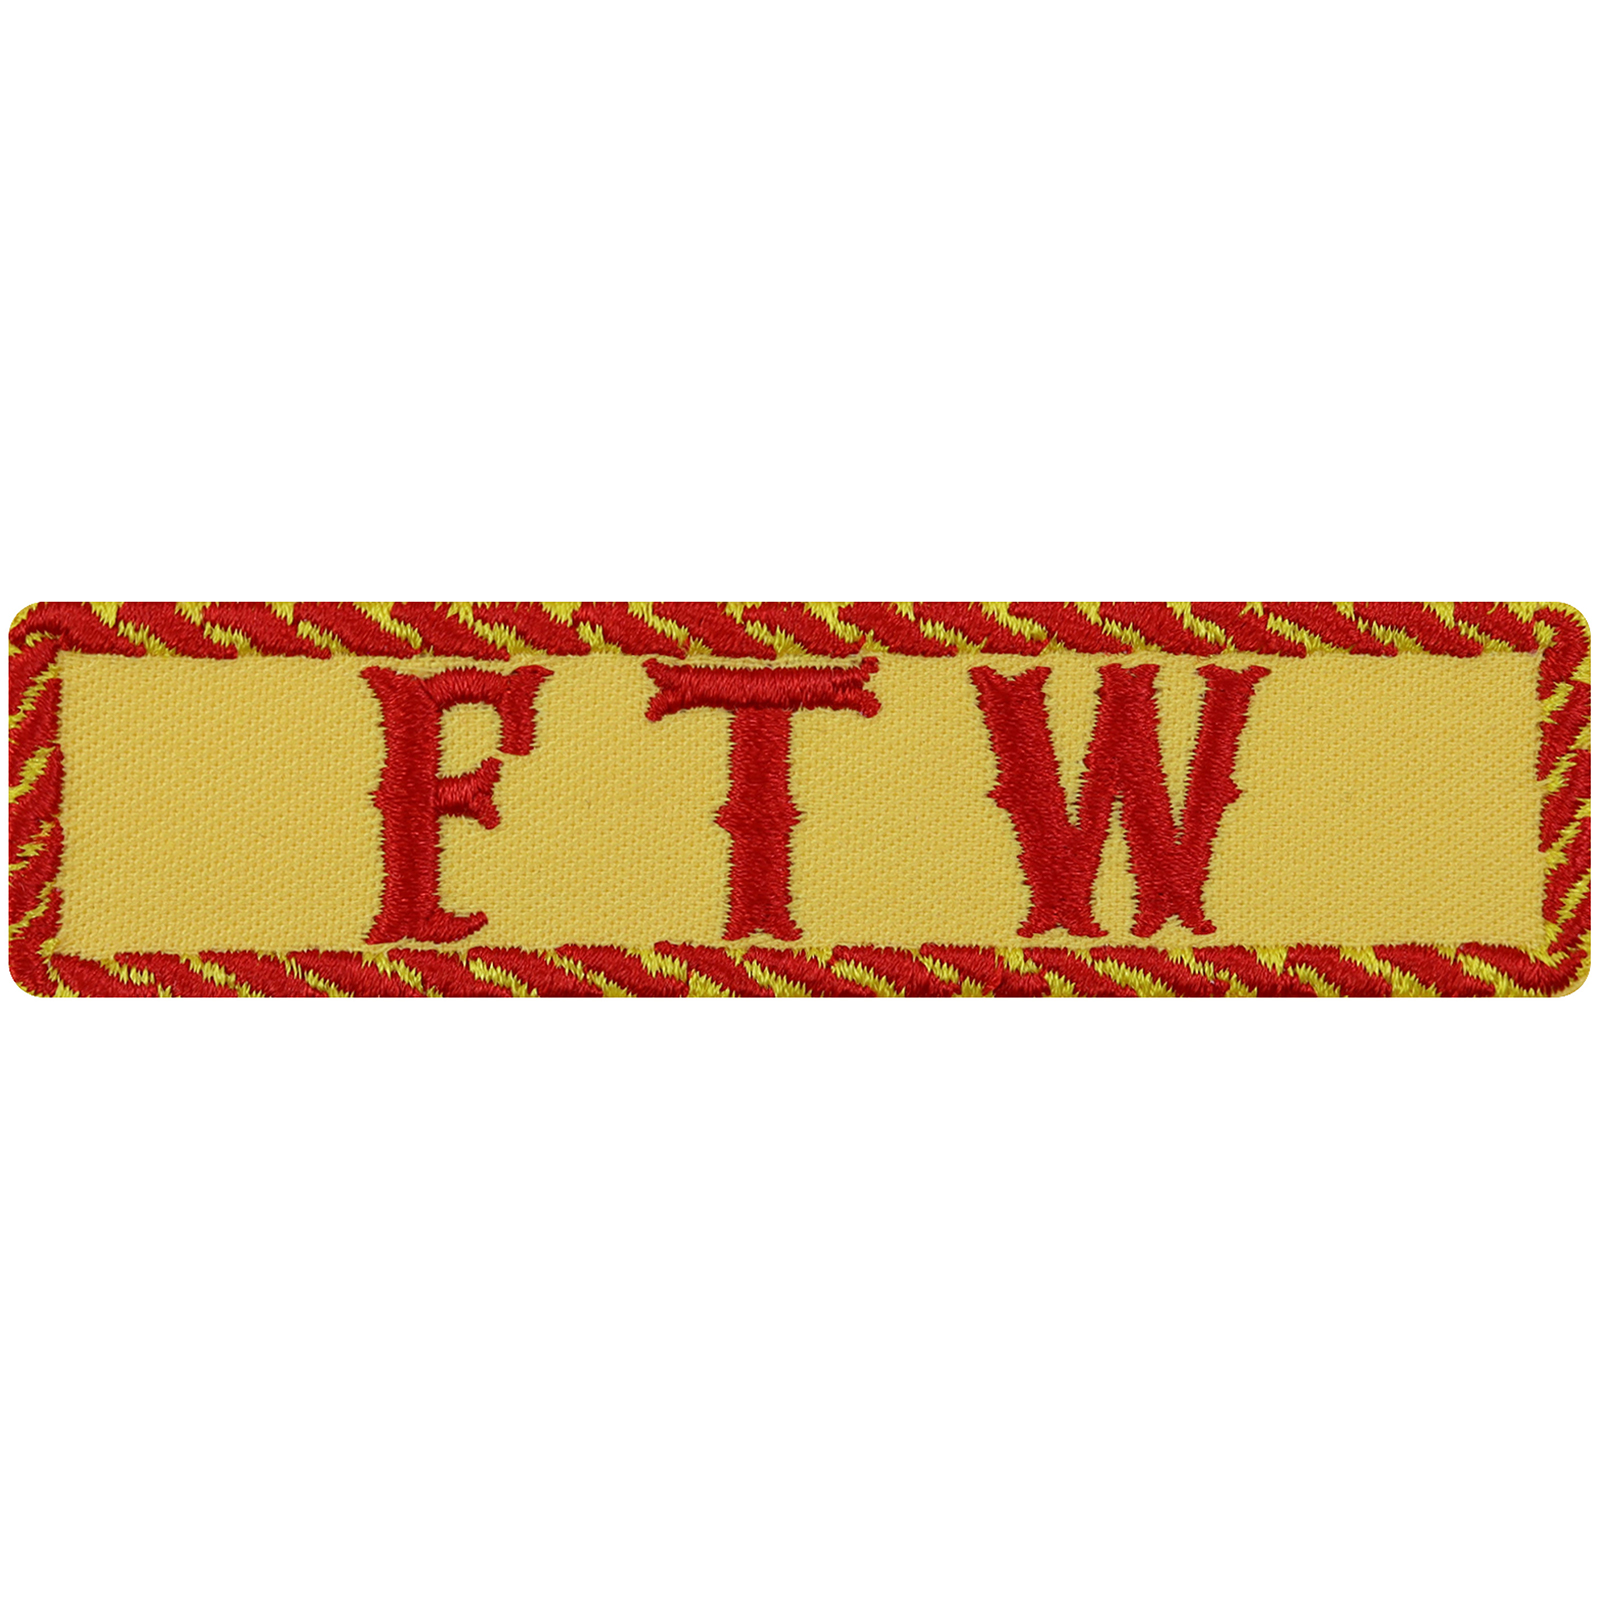 FTW - Patch